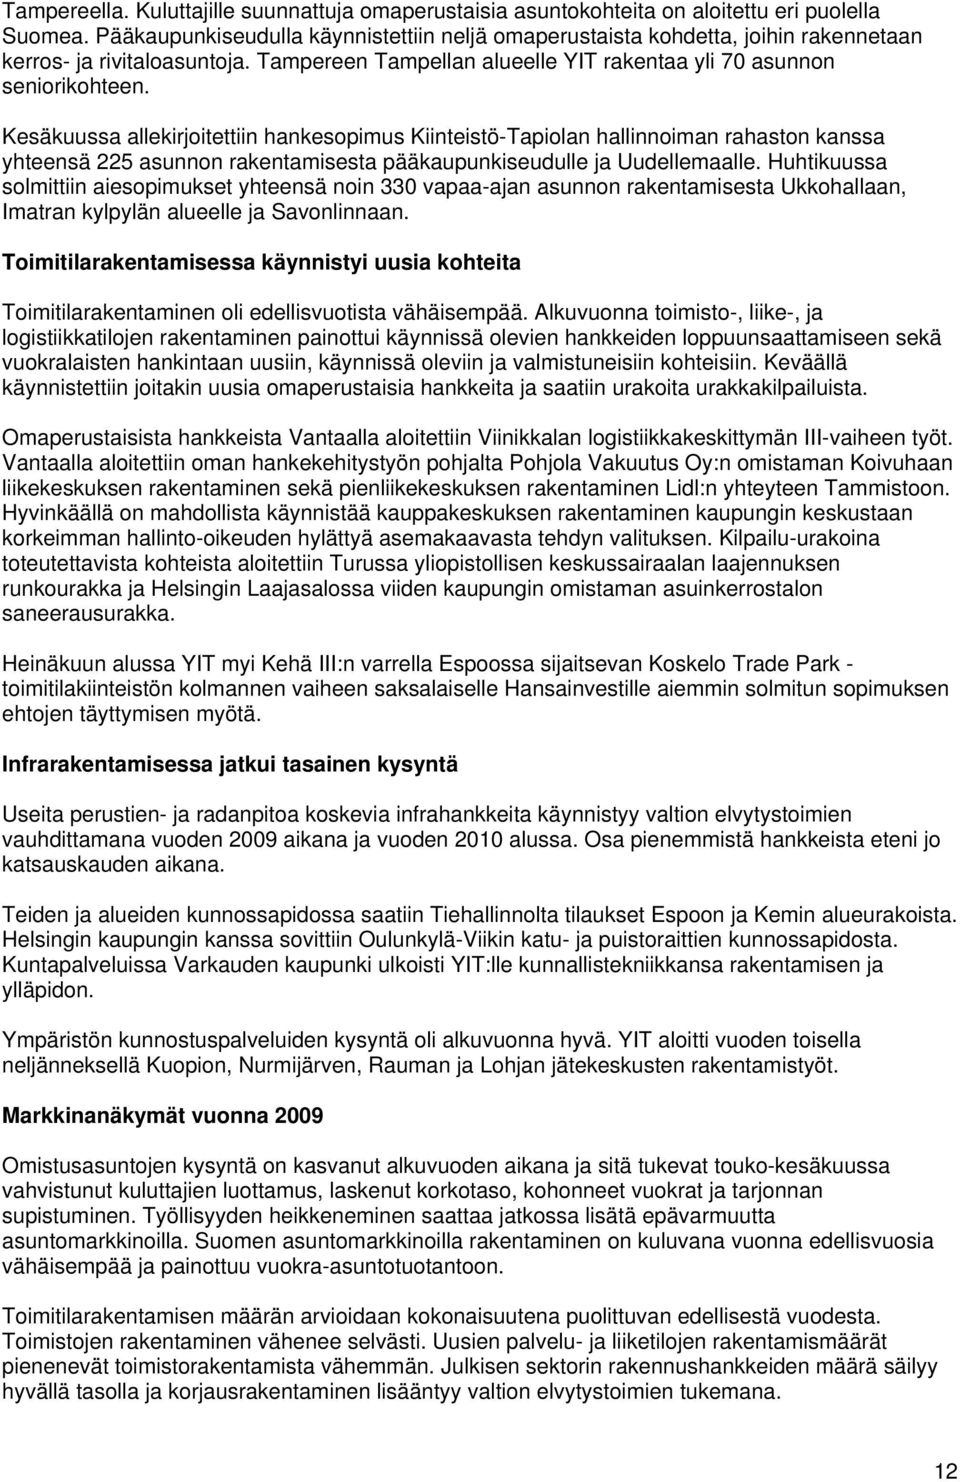 Kesäkuussa allekirjoitettiin hankesopimus Kiinteistö-Tapiolan hallinnoiman rahaston kanssa yhteensä 225 asunnon rakentamisesta pääkaupunkiseudulle ja Uudellemaalle.